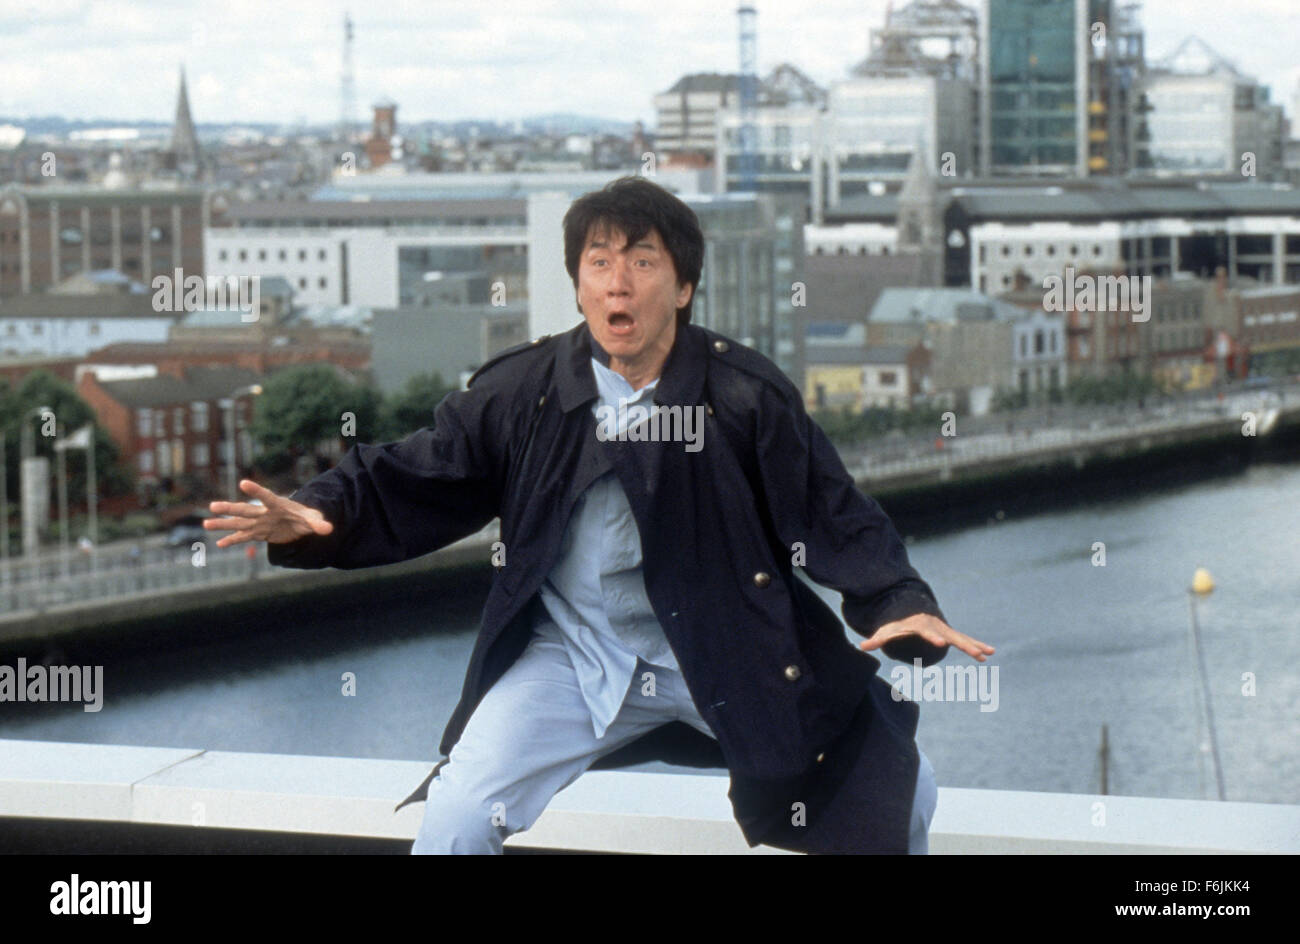 Juin 13, 2004 ; Hollywood, CA, USA ; JACKIE CHAN comme Eddie Yang dans 'Le médaillon' réalisé par Gordon Chan. Banque D'Images